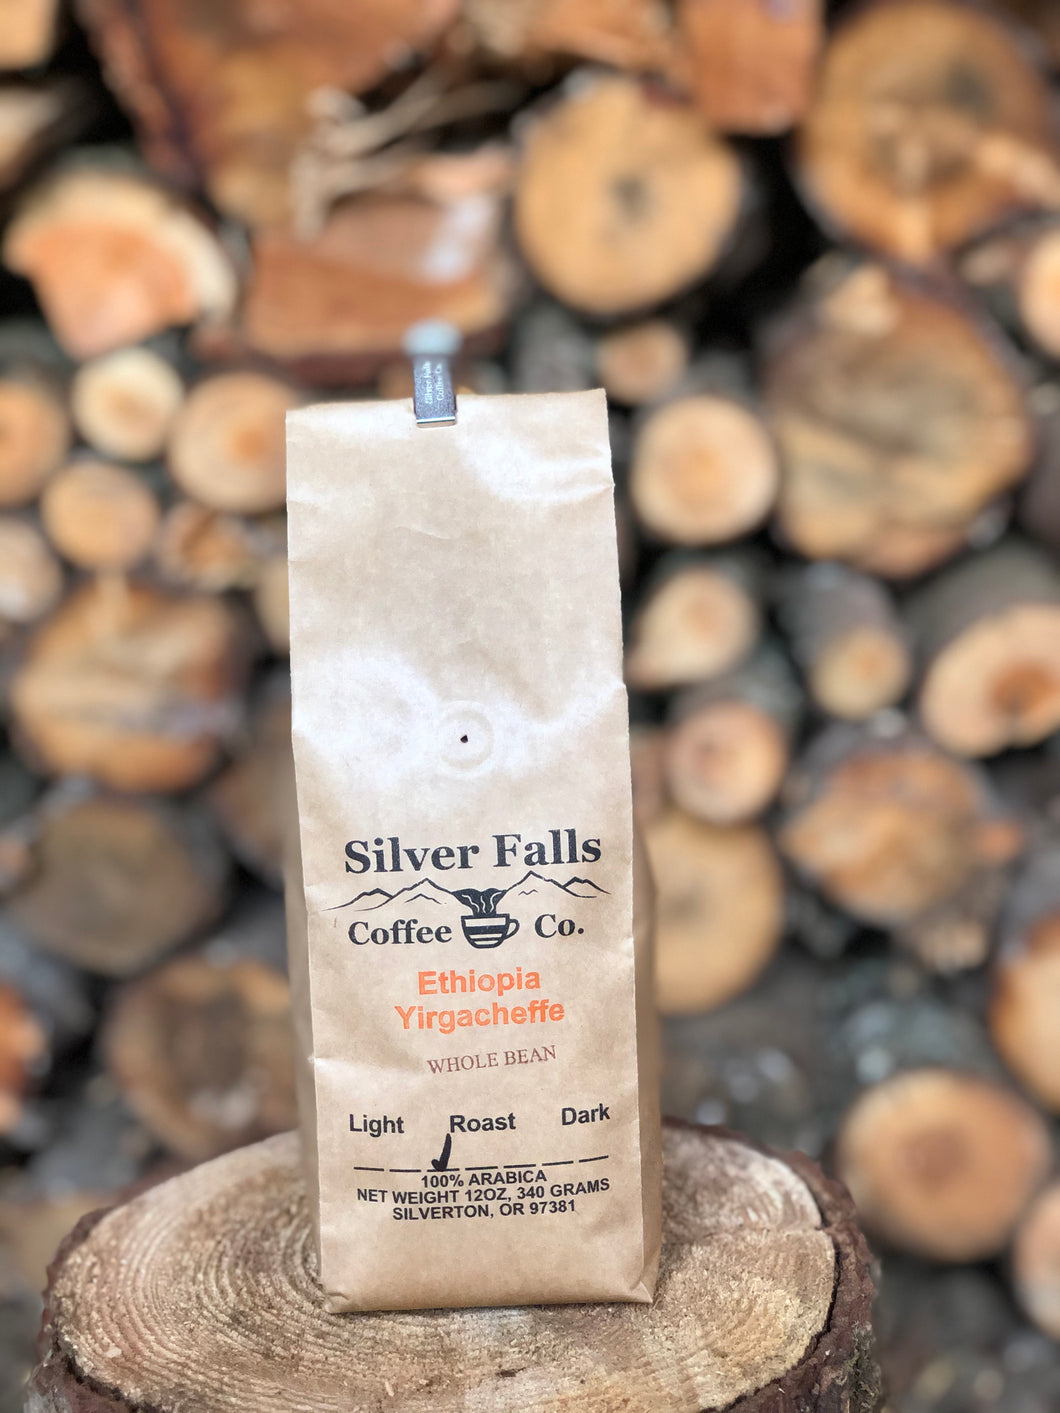 Silver Falls Coffee Co. Ethiopia Yirgacheffe